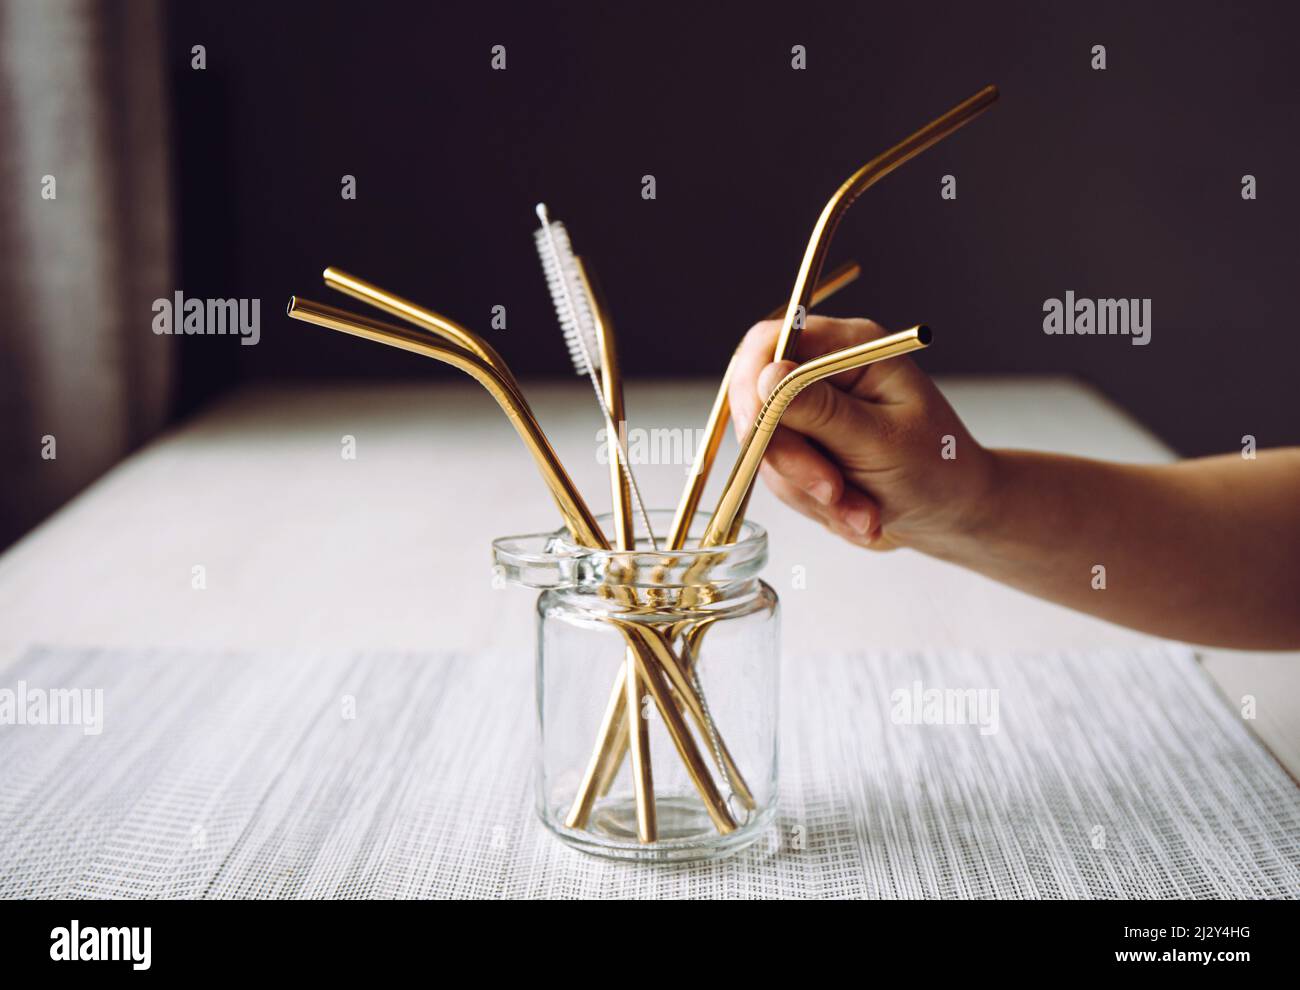 La mano del bambino prende la cannuccia bevente del metallo d'oro dal vaso di vetro nella cucina domestica. Concetto di stile di vita sostenibile. Foto Stock